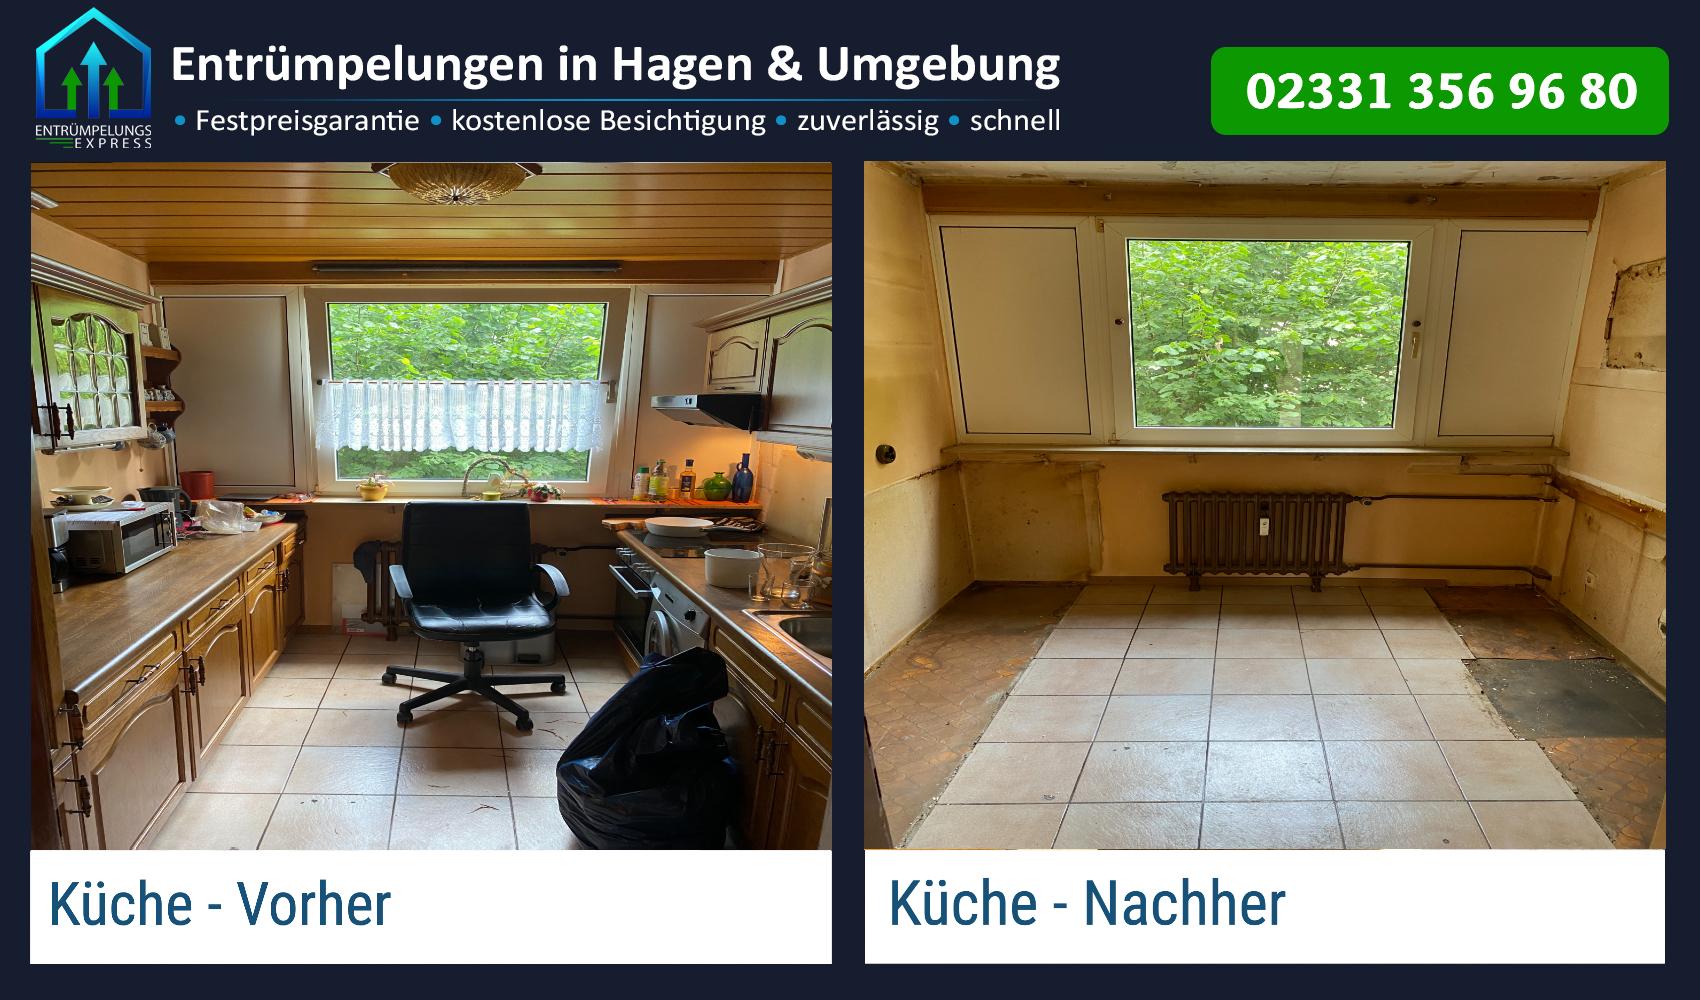 Bild 4 Entrümpelungs Express - Entrümpelungen, Wohnungsauflösungen und Haushaltsauflösungen in Hagen